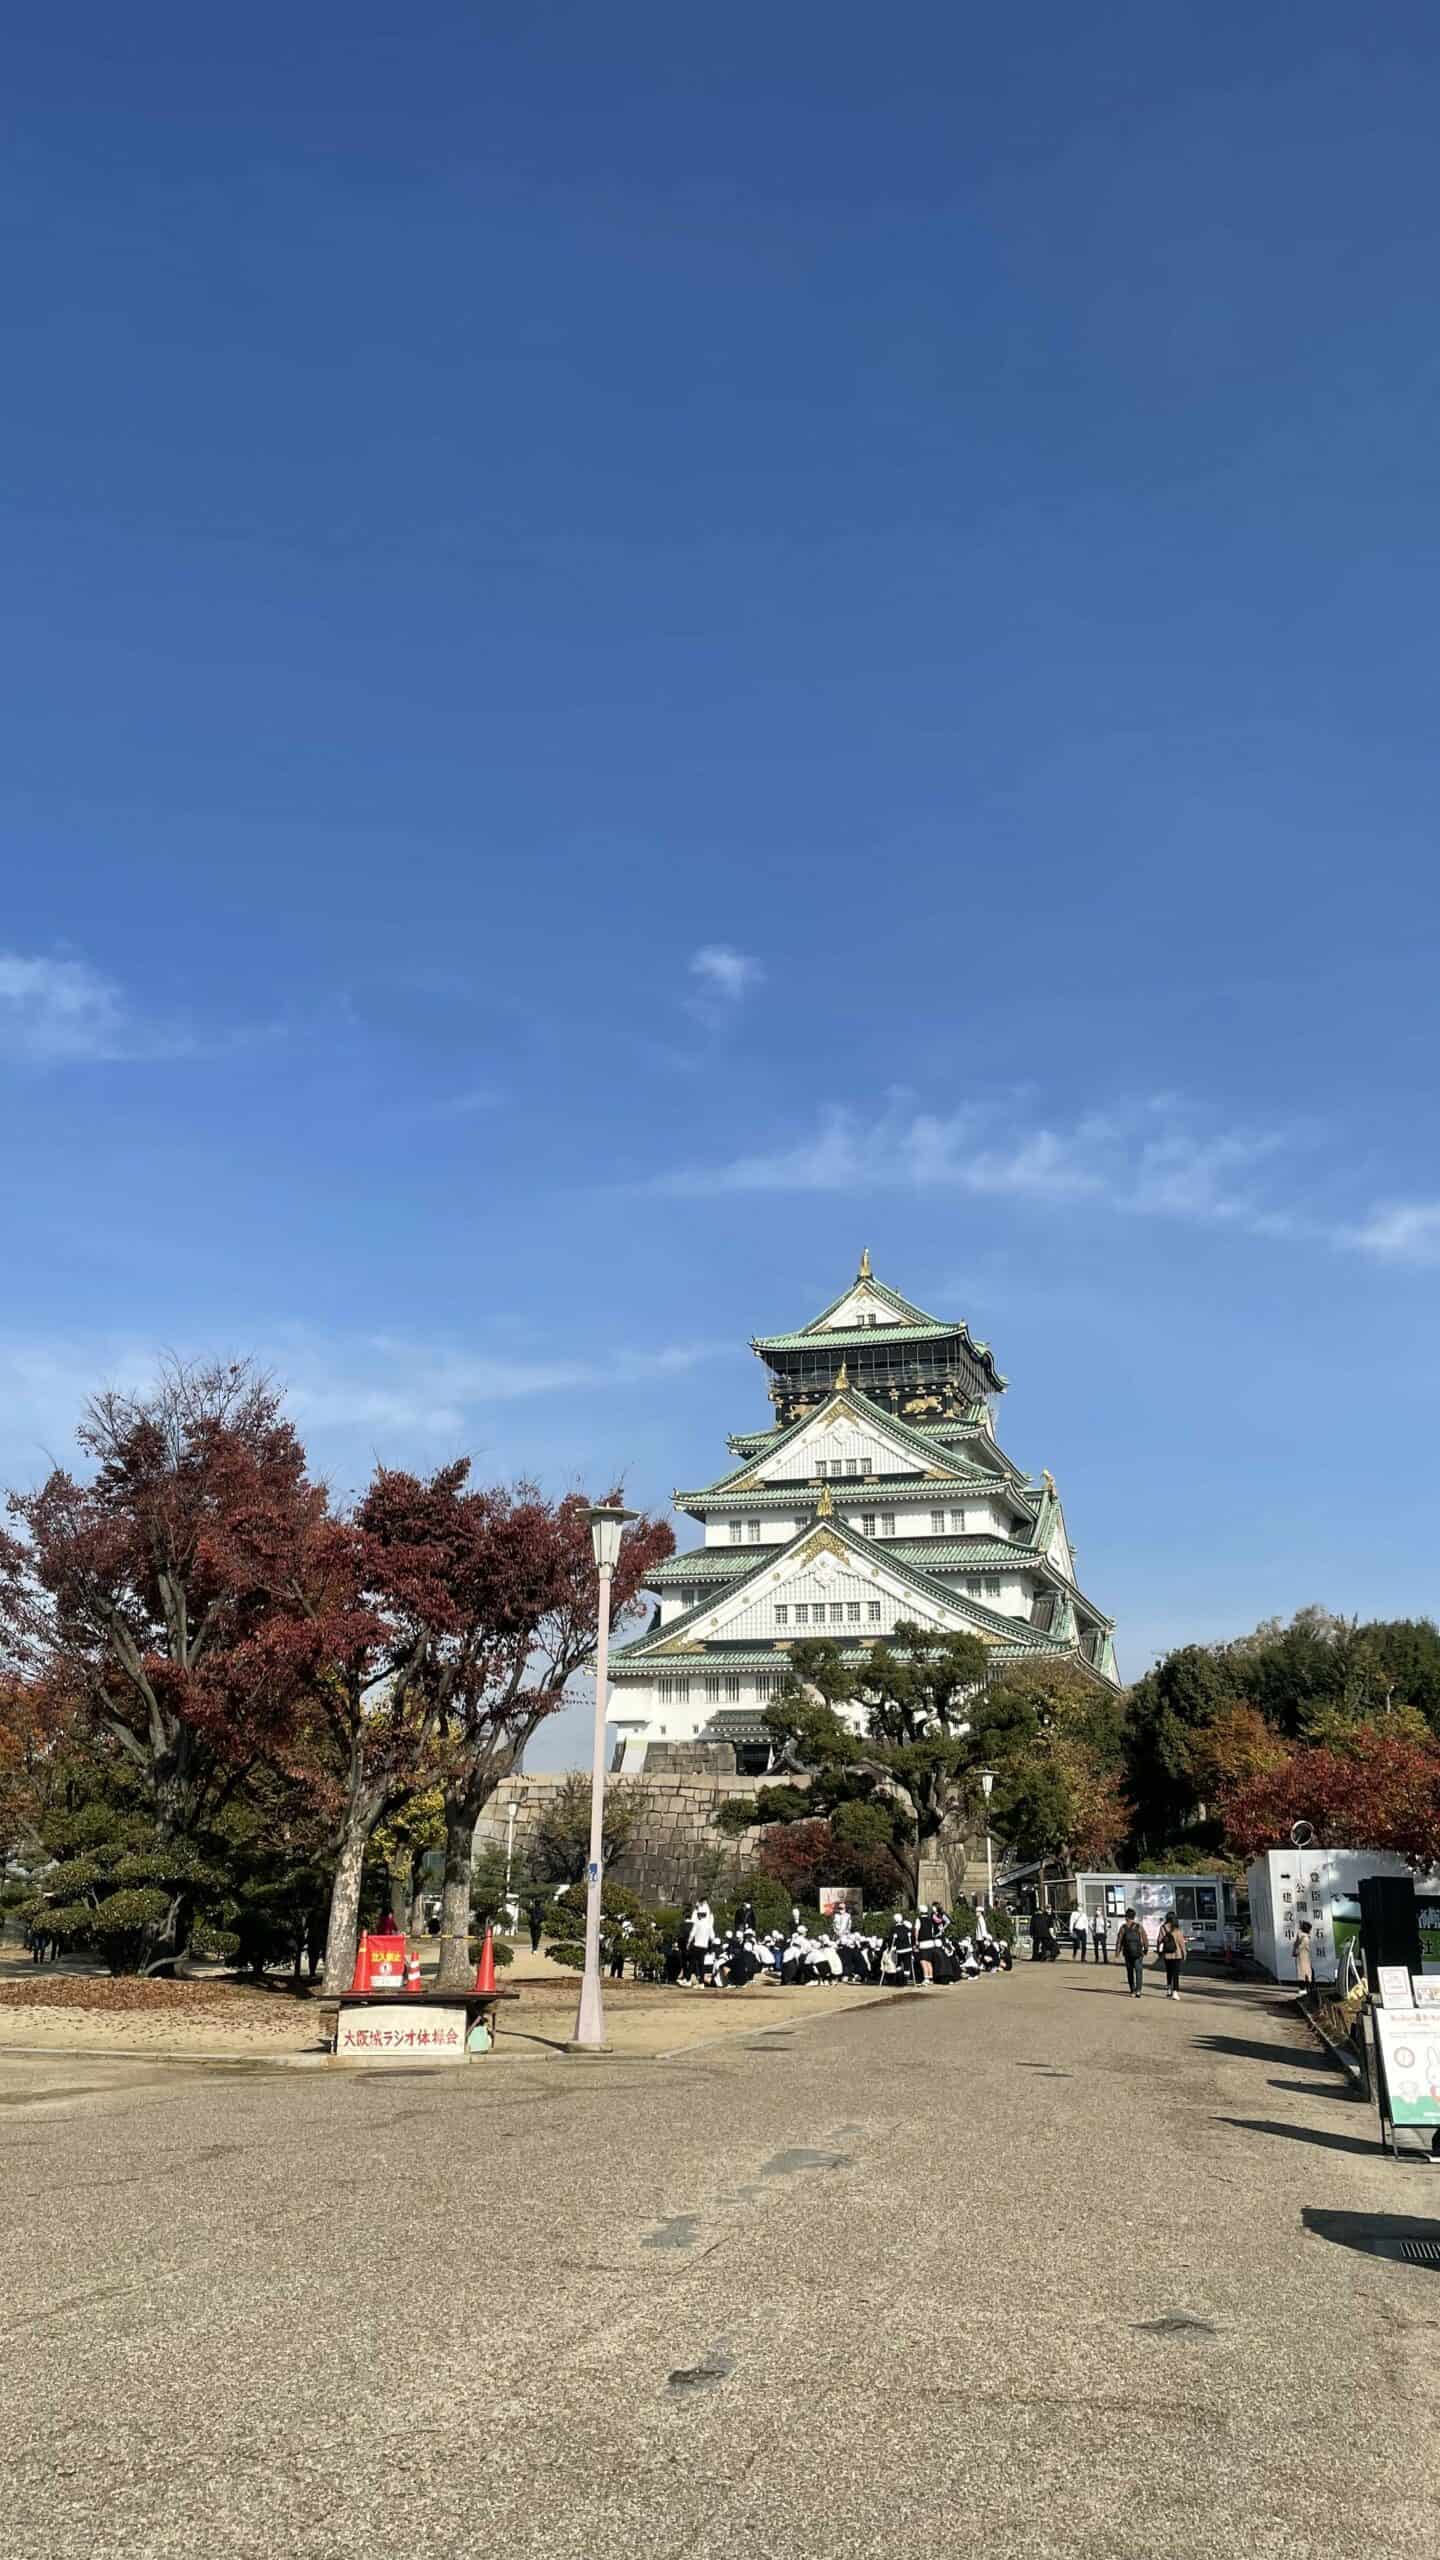 Wisata di Jepang - Osaka Castle